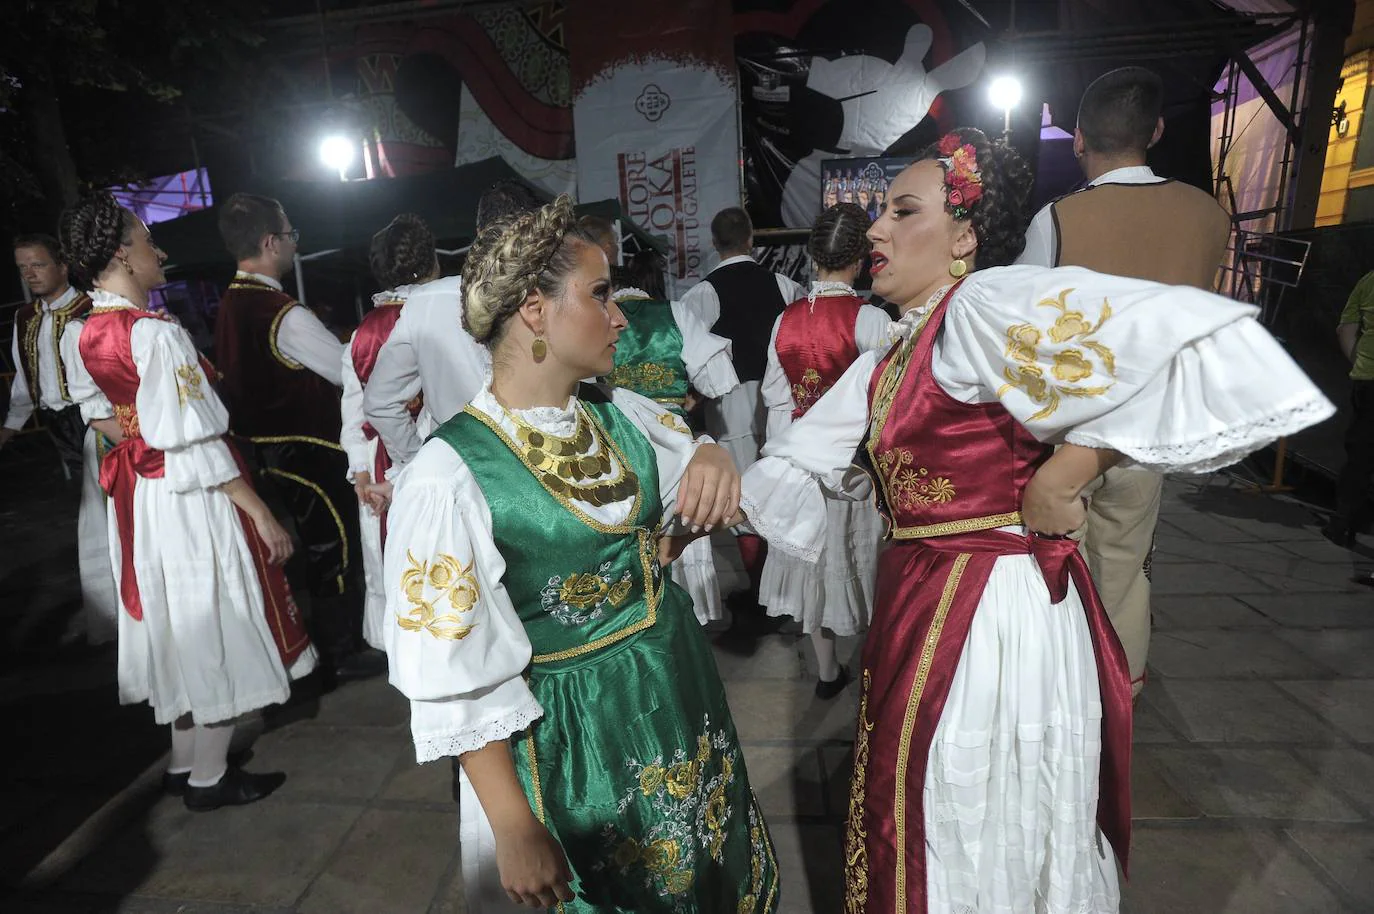 El festival de folclore de Portugalete volvió a reunir este sábado a gran cantidad de espectadores